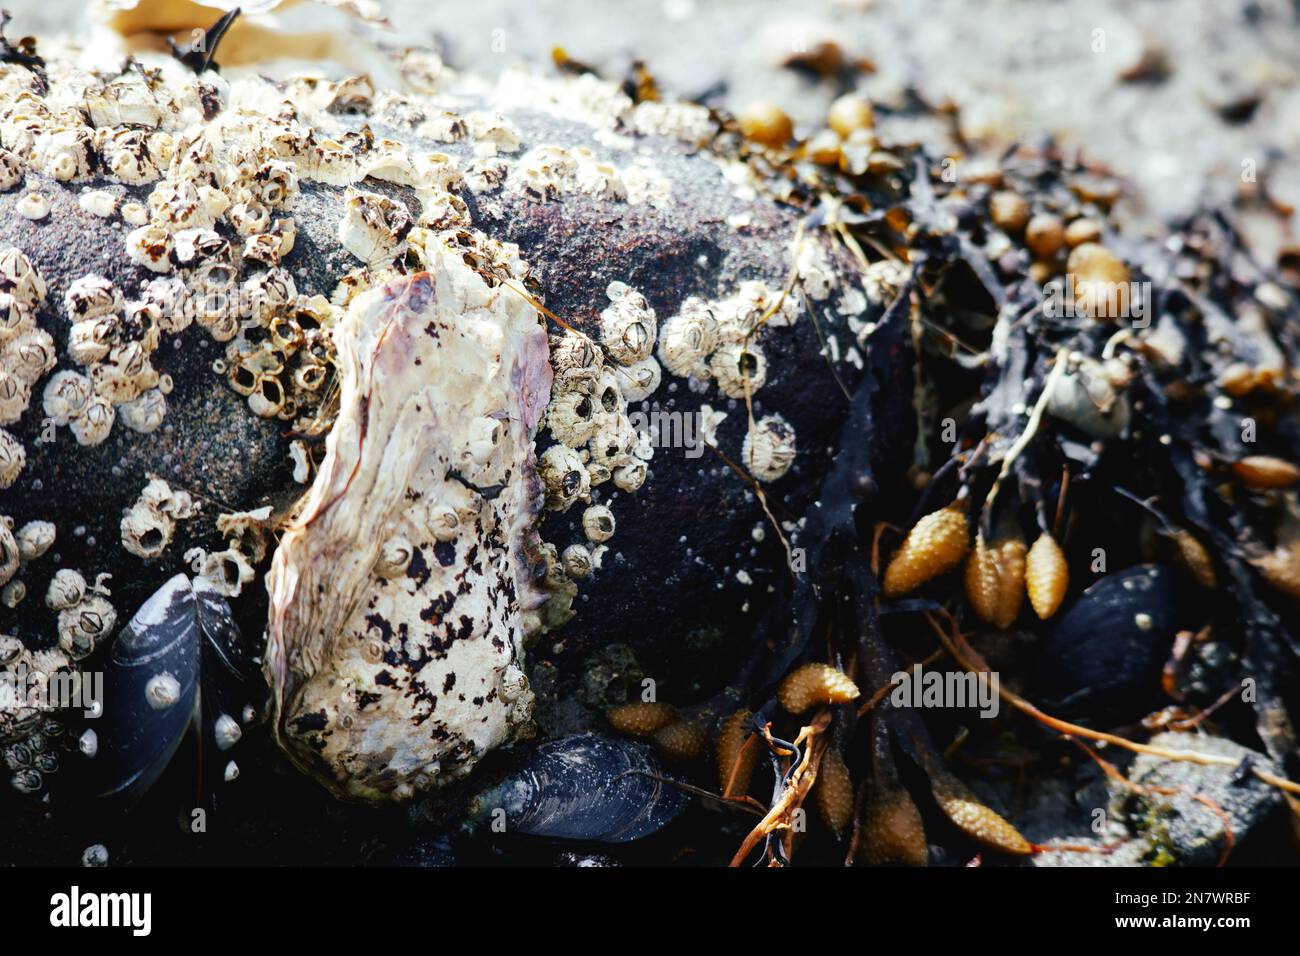 Vita marina, come cozze, gobbe e barnacoli, rinvenuti sulla riva del mare dopo una tempesta primaverile Foto Stock